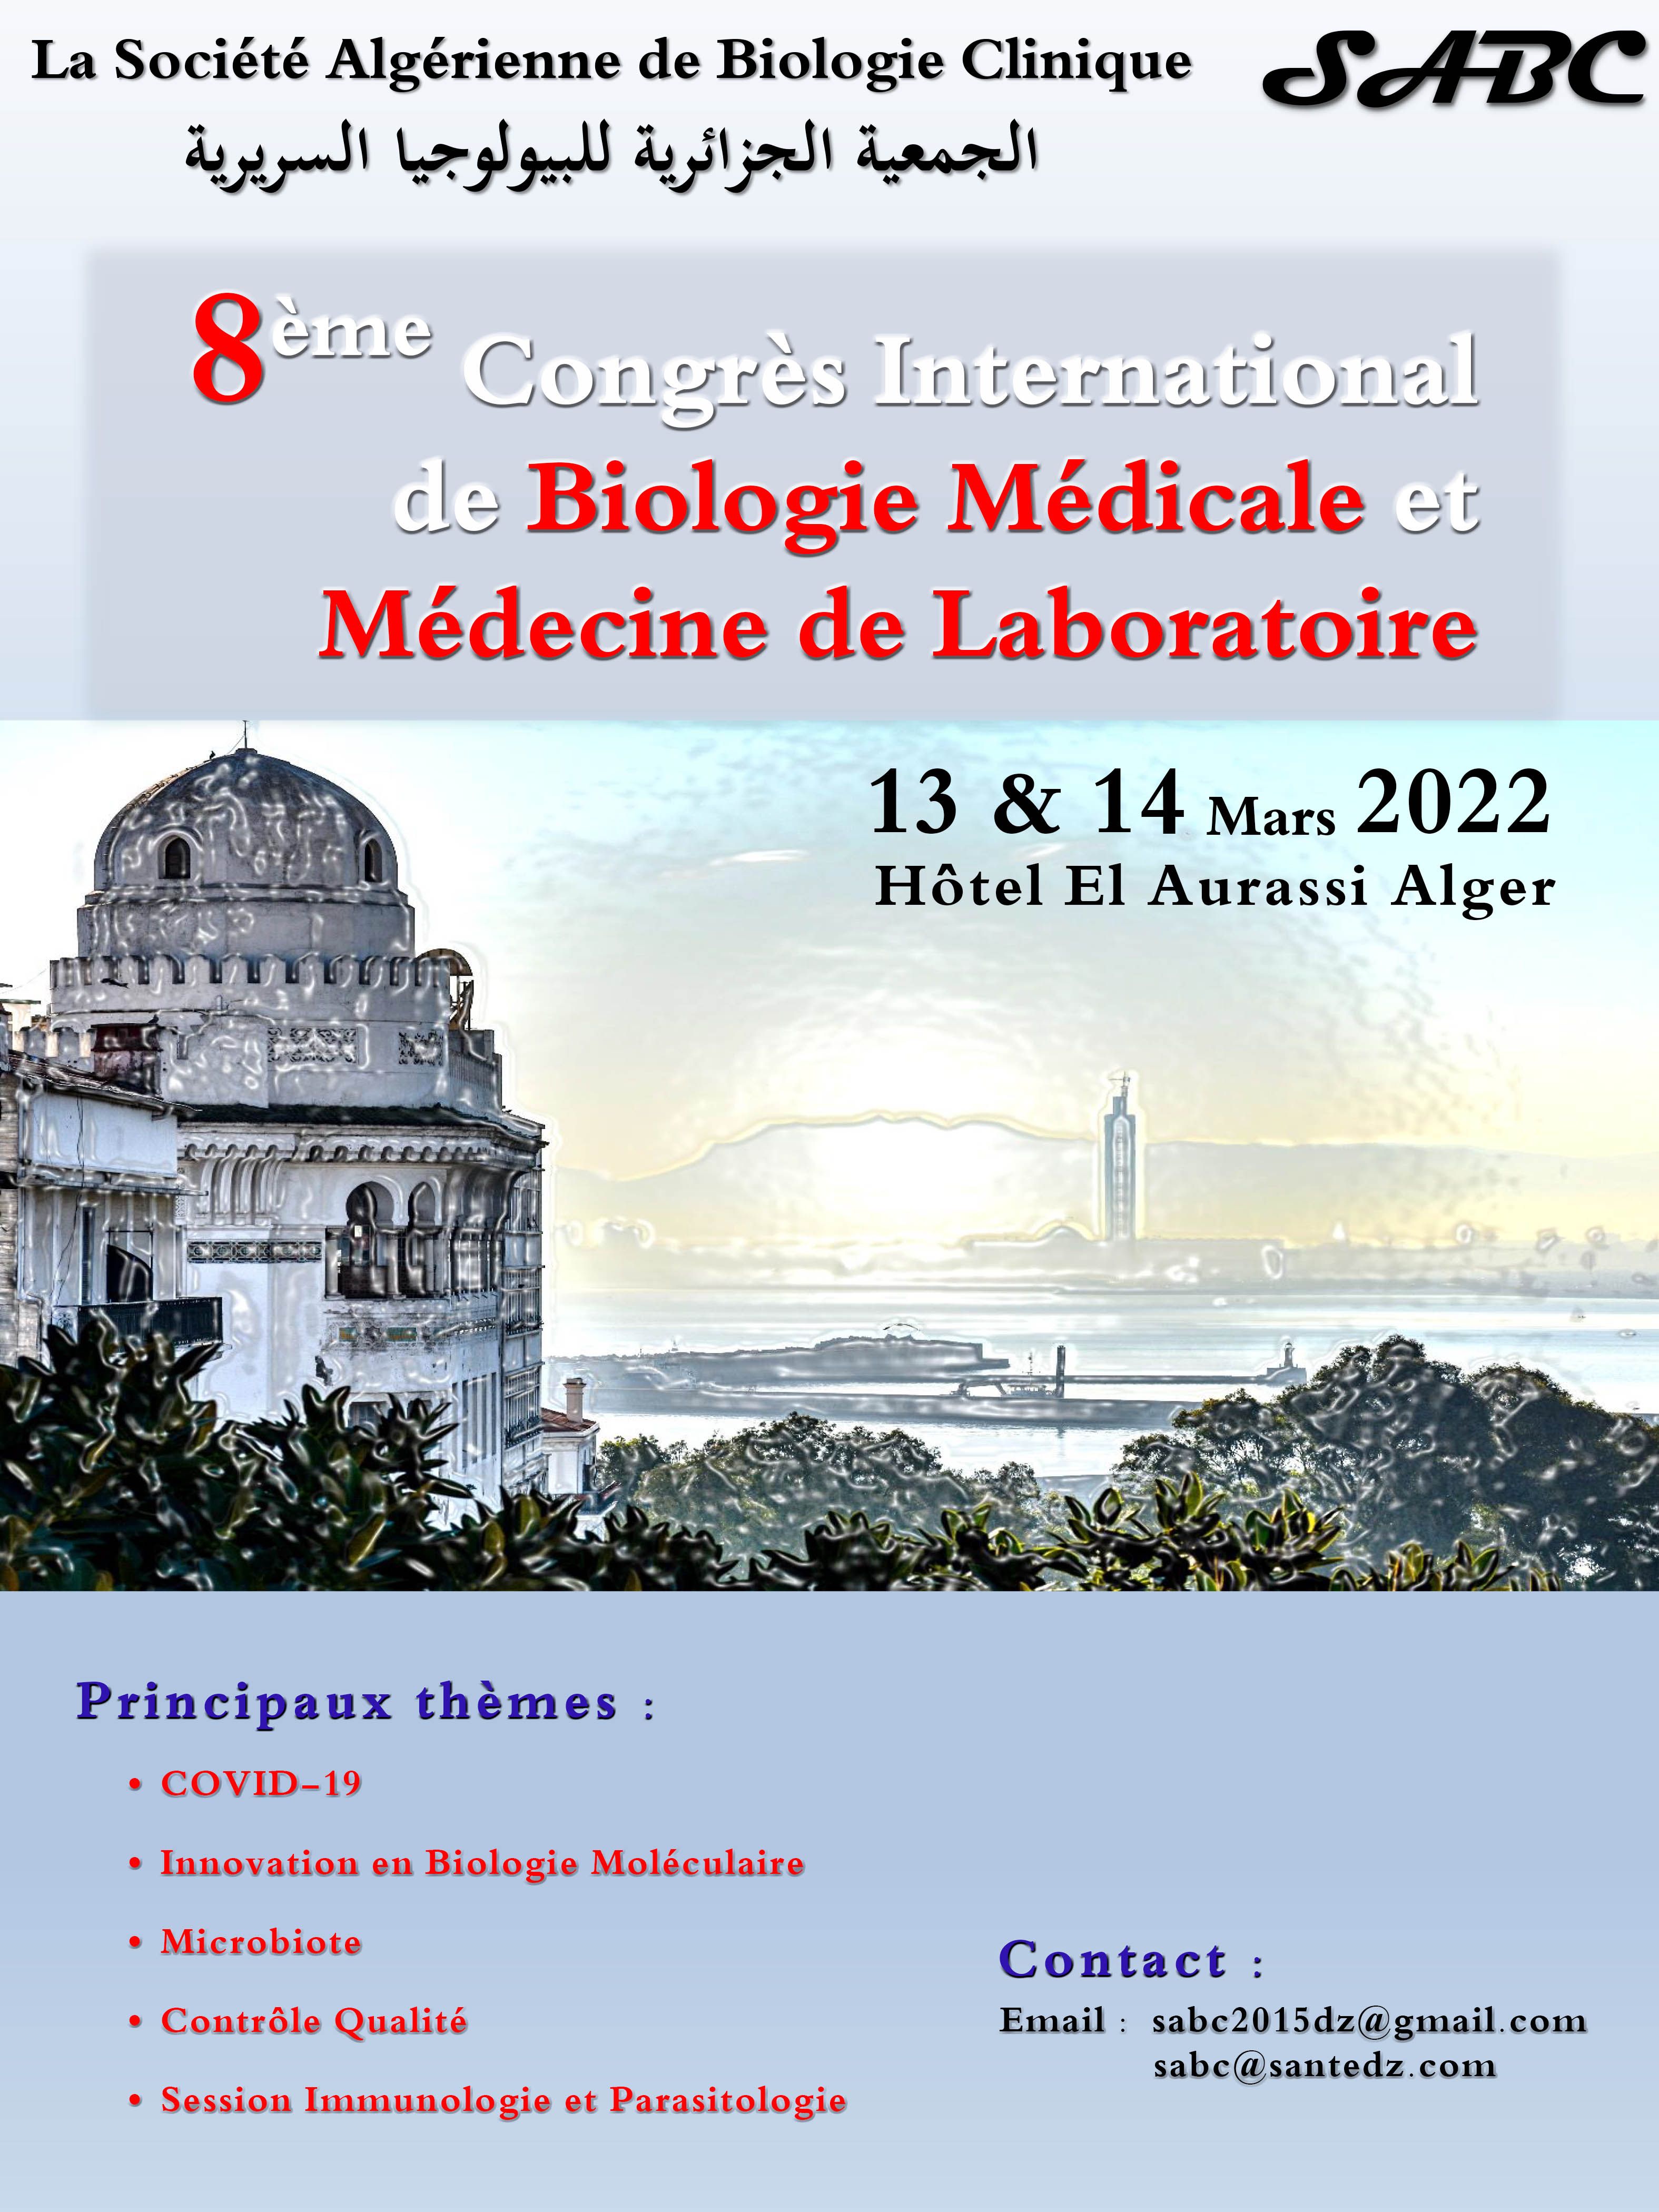 8ème Congrès International de Biologie Médicale et Médecine de Laboratoire organisé par La Société Algérienne de Biologie Clinique en Hybride (SABC) - 13 & 14 Mars 2022 à Alger affiche